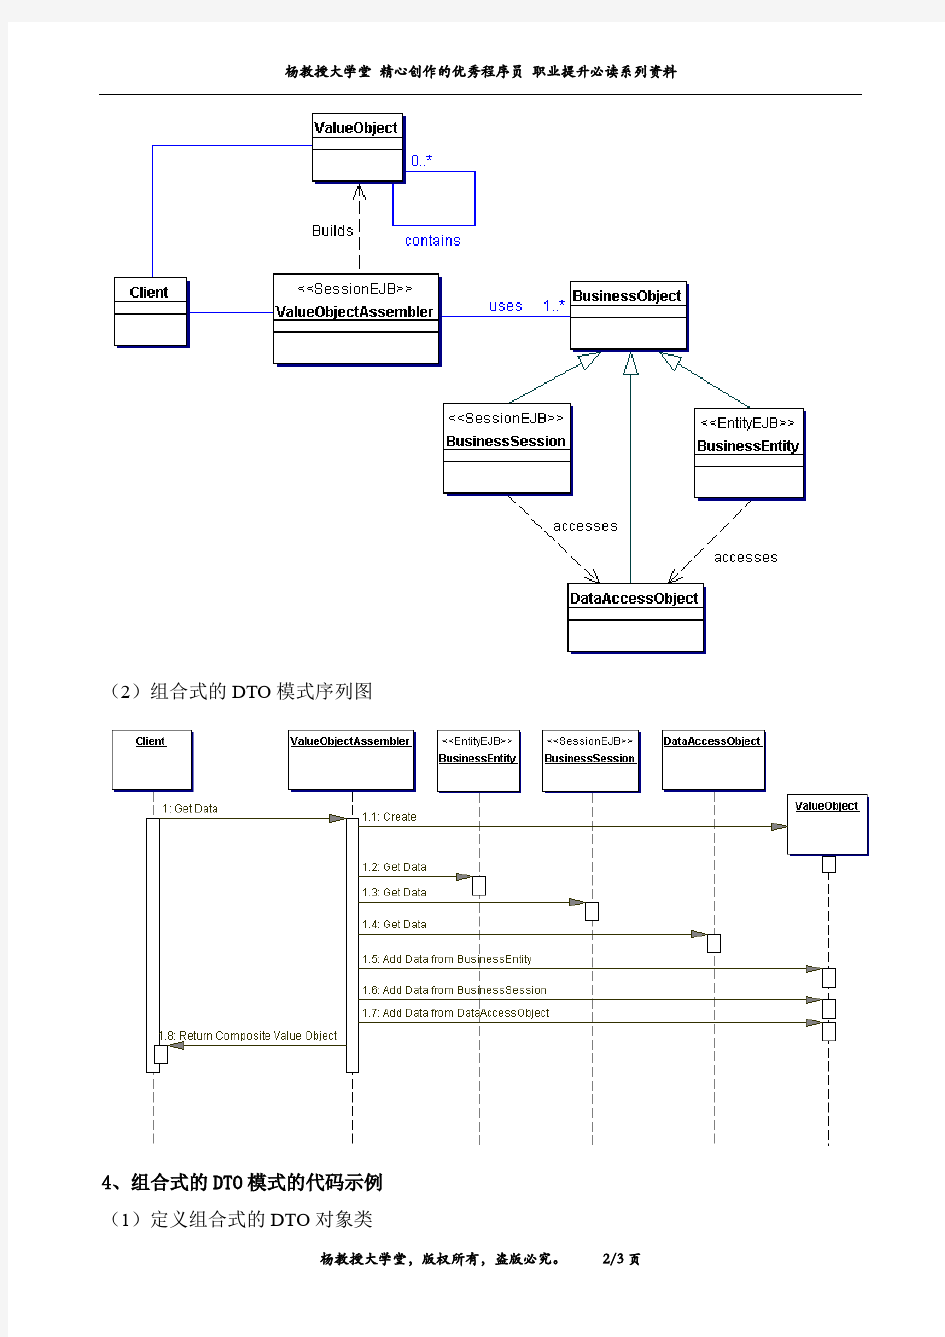 跟我学软件系统数据访问层设计中所涉及J2EE核心设计模式——组合式的DTO(Transfer Object Assembler)模式